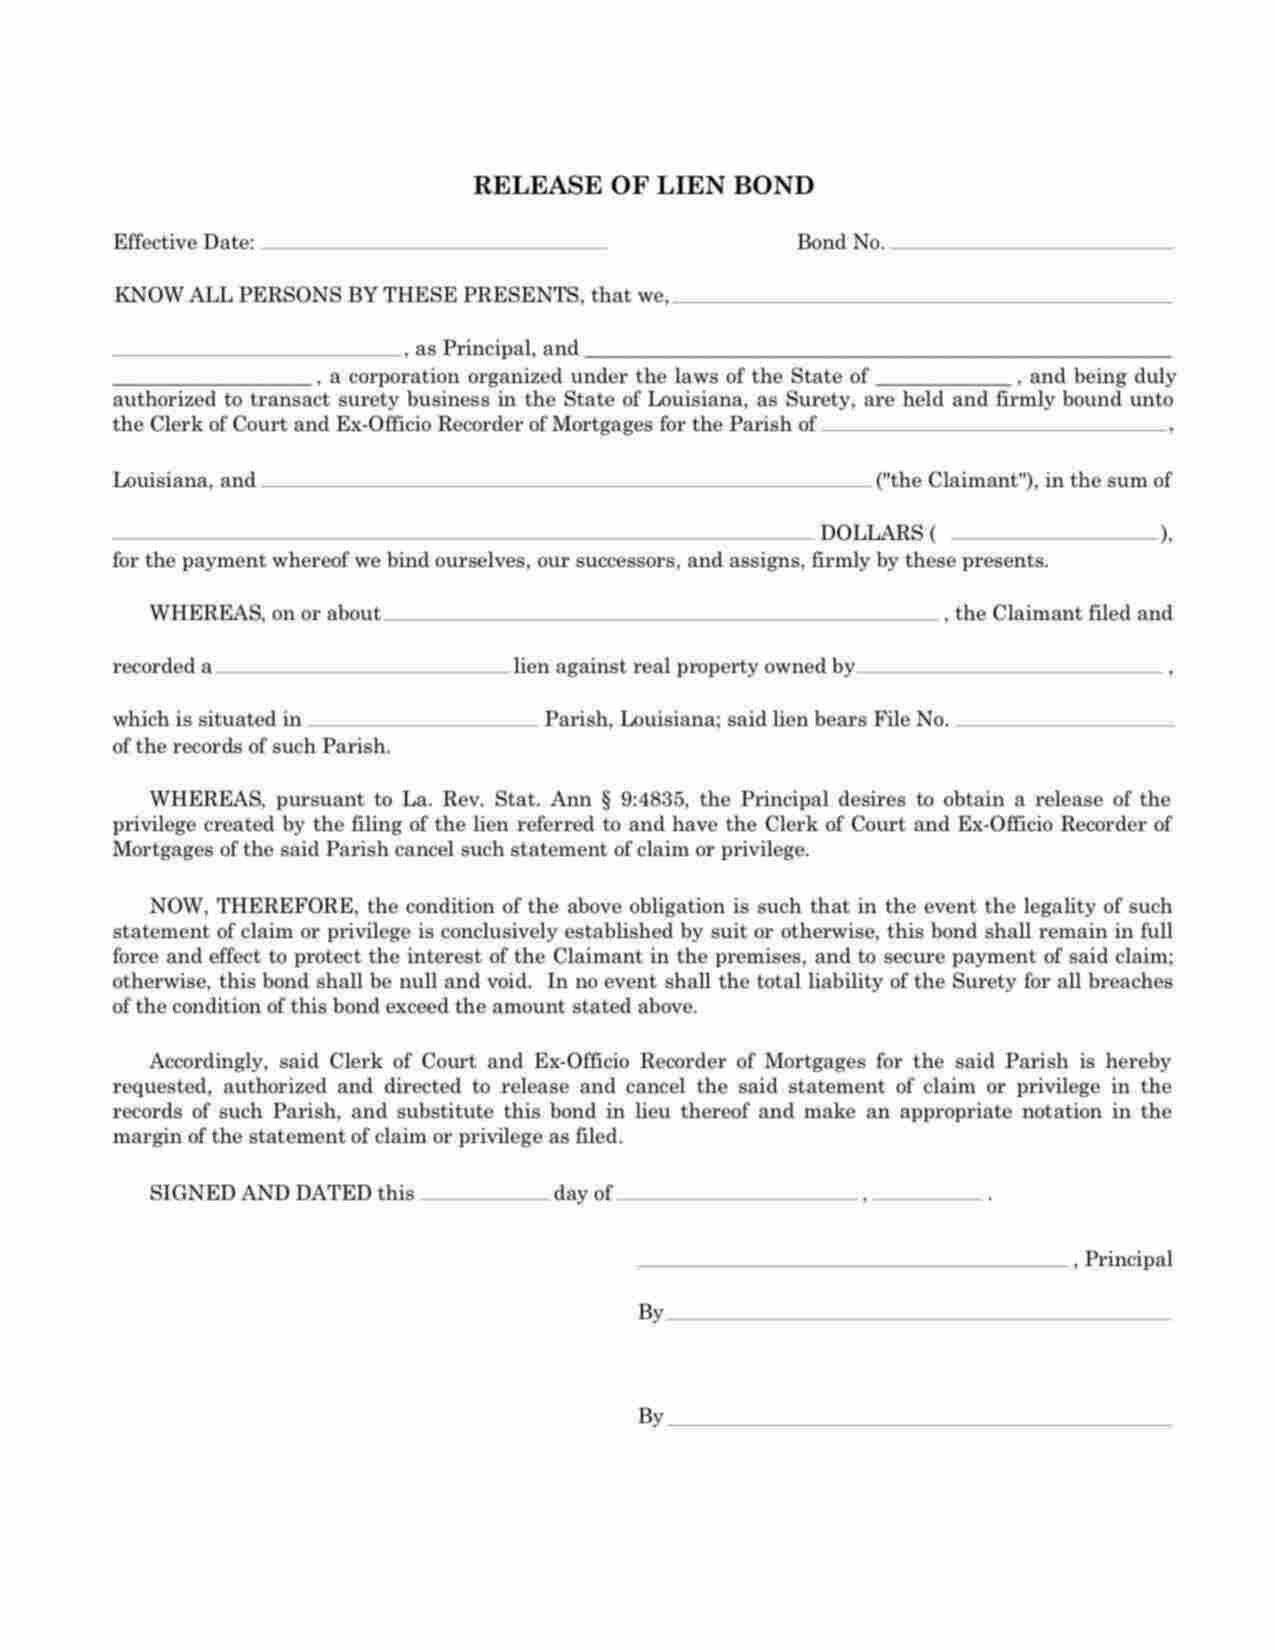 Louisiana Release of Lien Bond Form